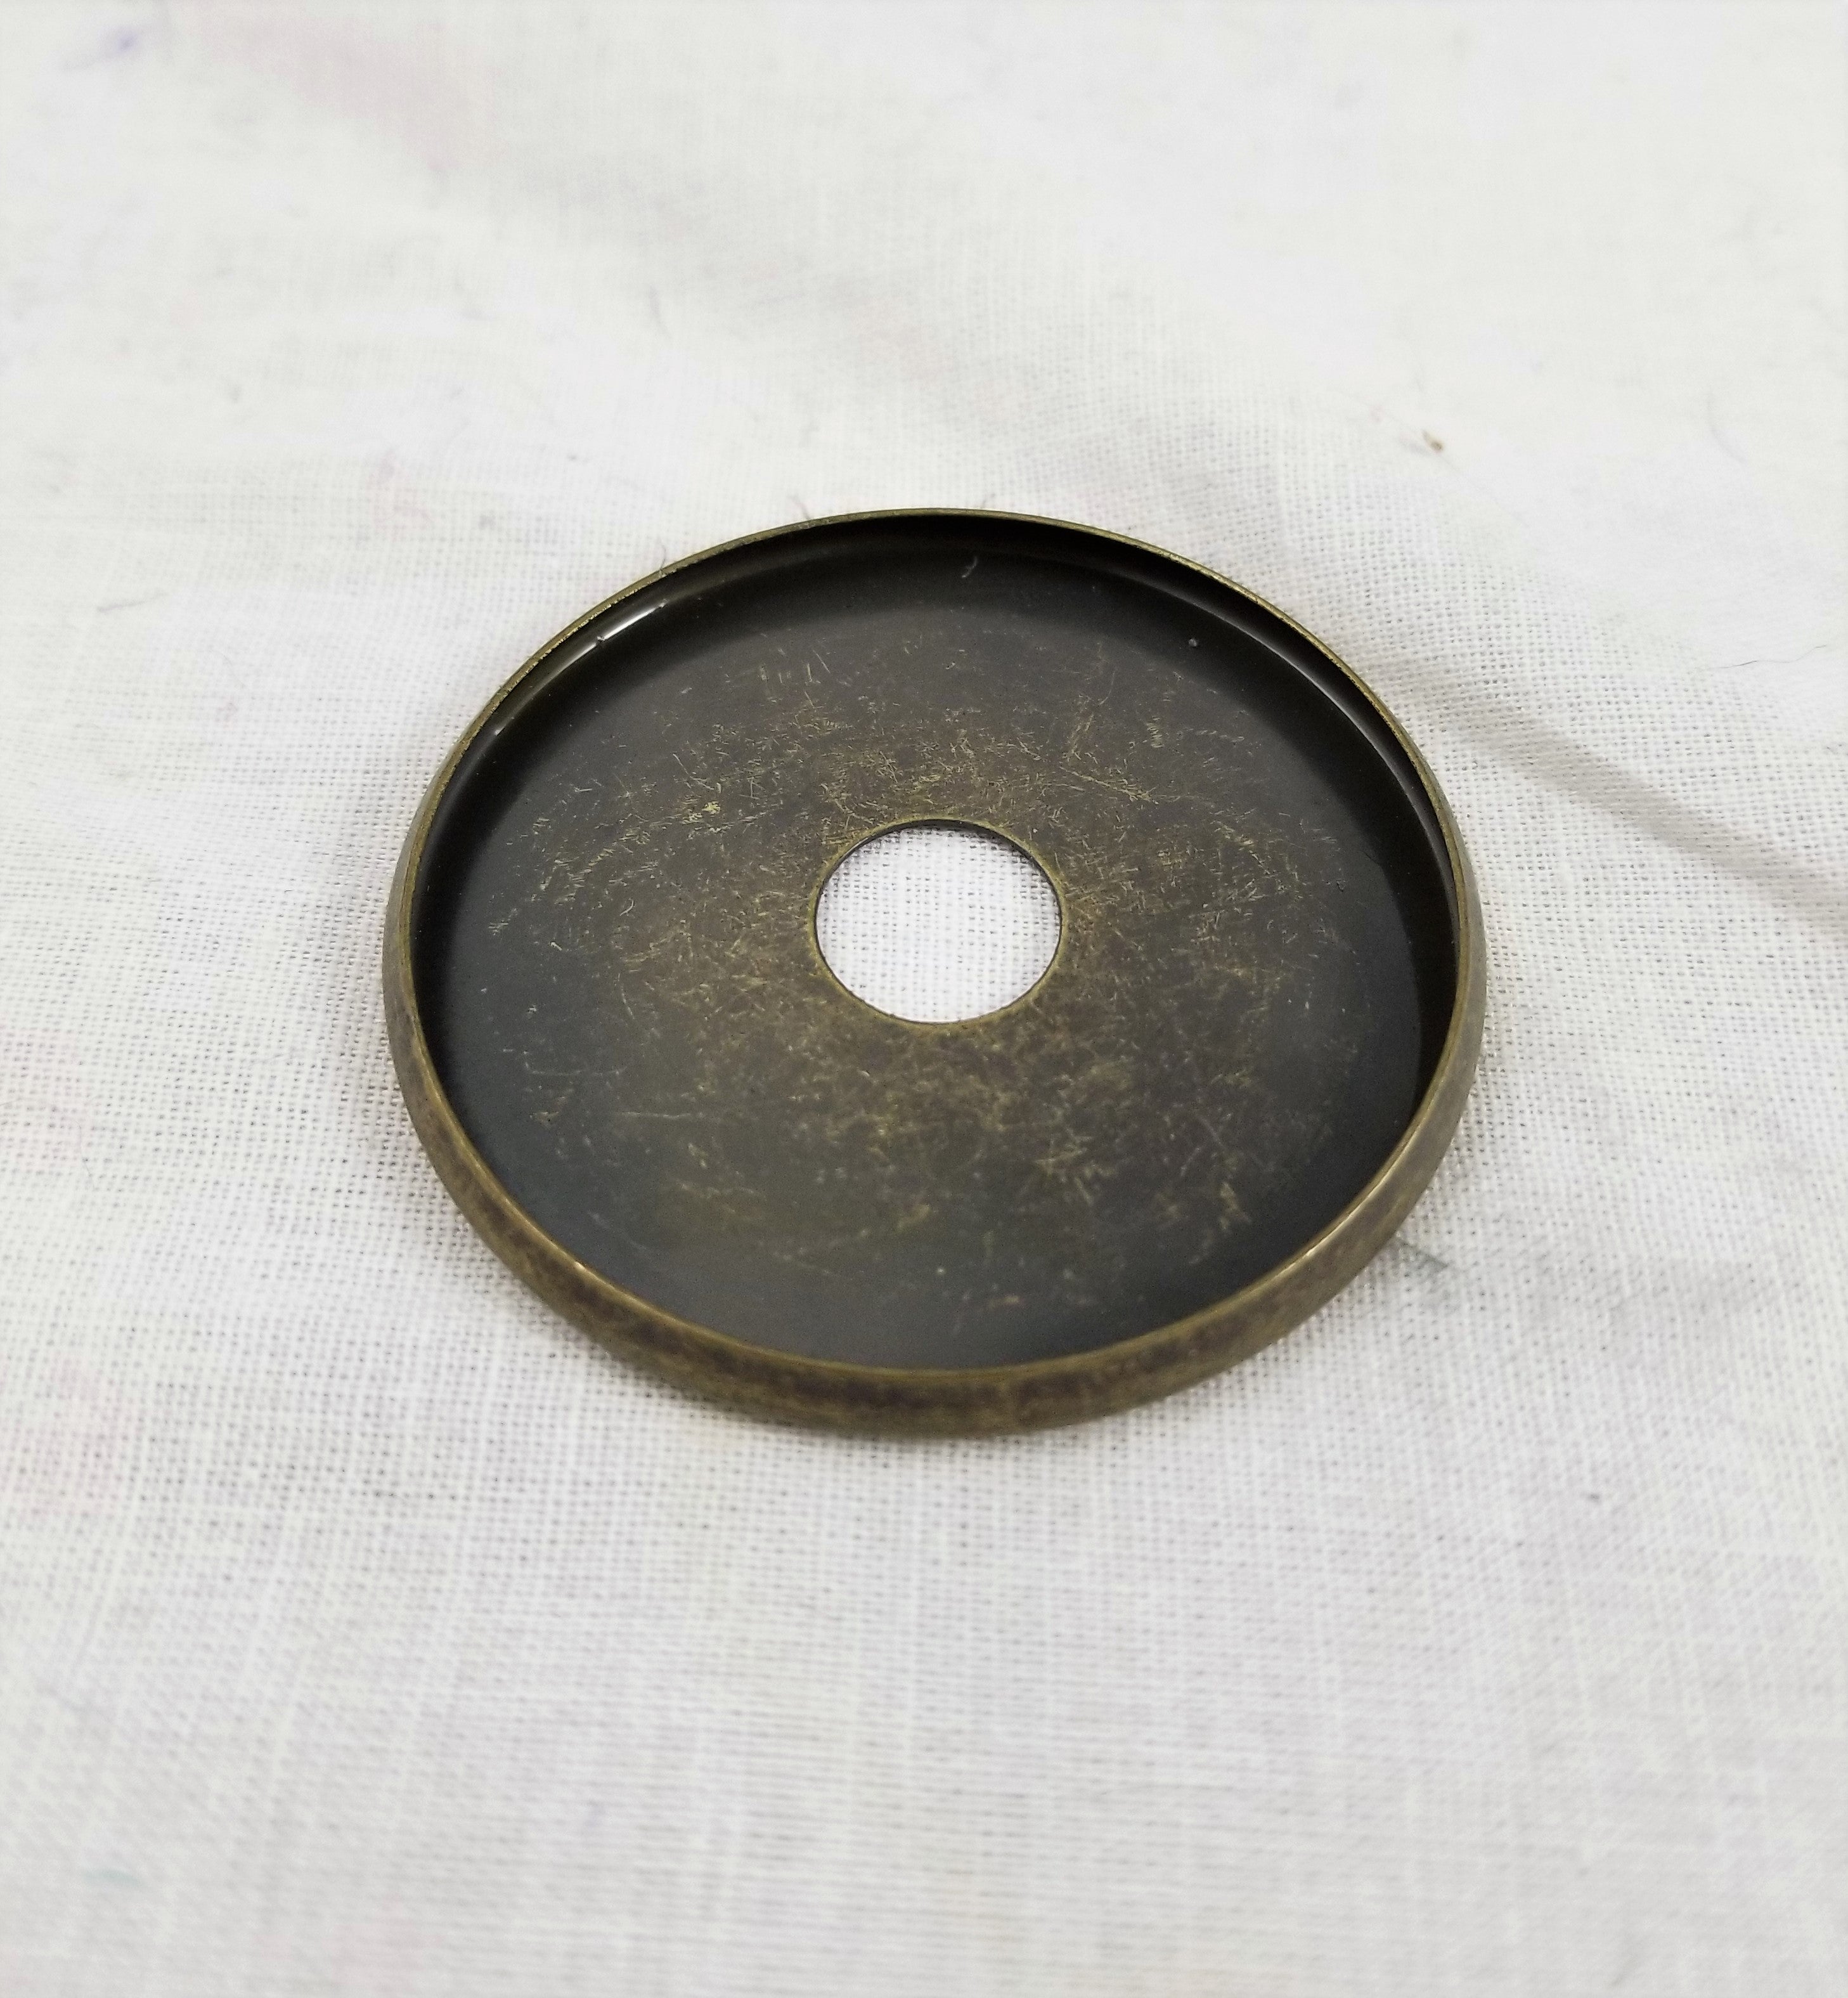 Steel Check Ring 2" Diameter - 1/8" Slip